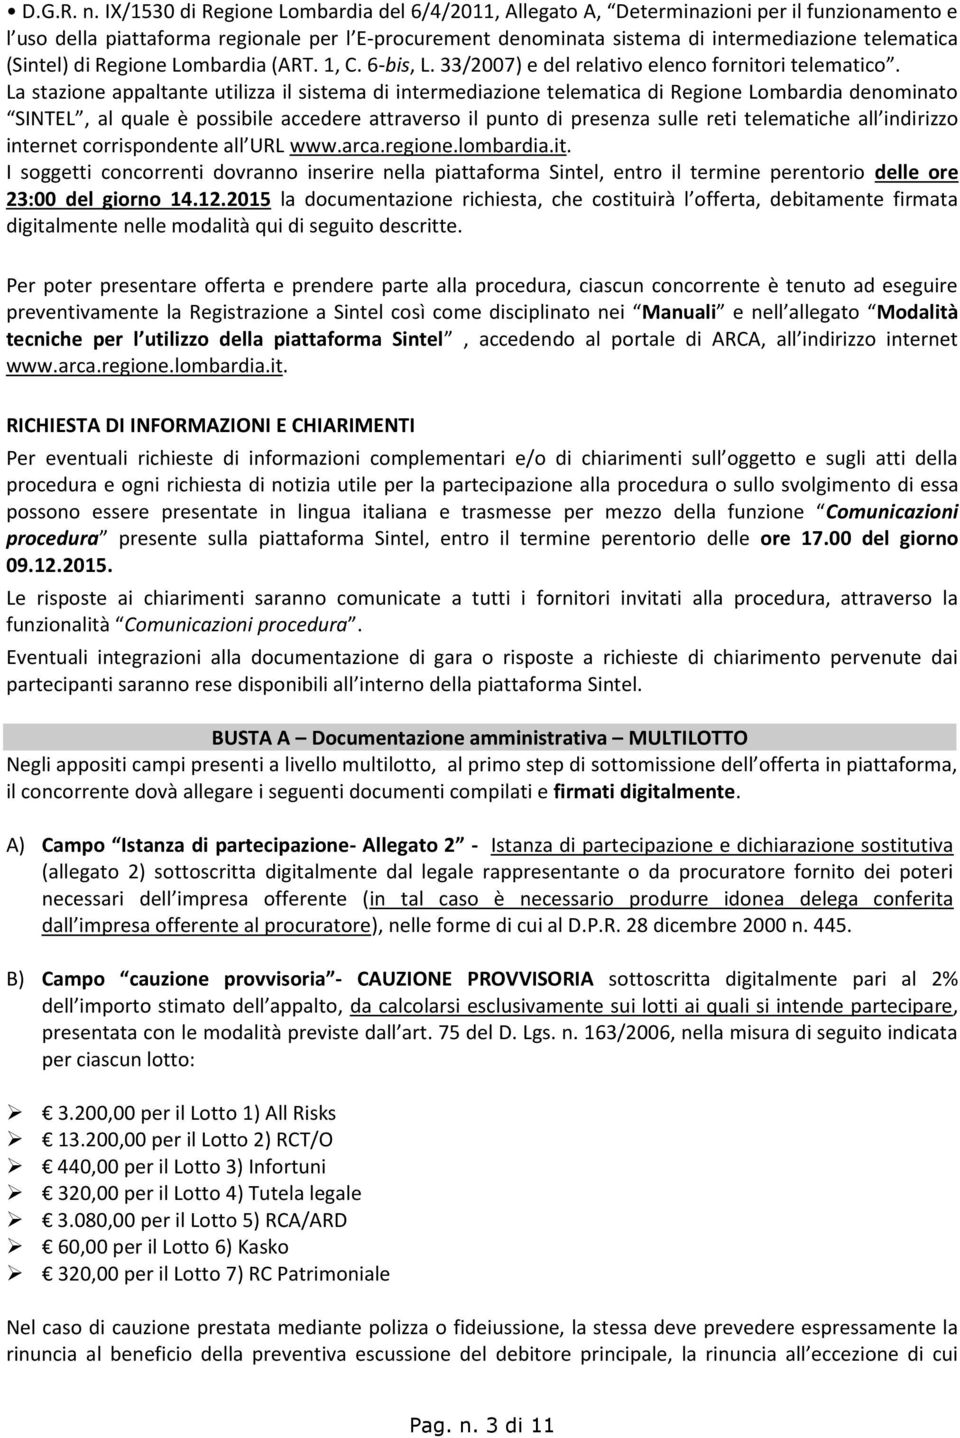 (Sintel) di Regione Lombardia (ART. 1, C. 6-bis, L. 33/2007) e del relativo elenco fornitori telematico.